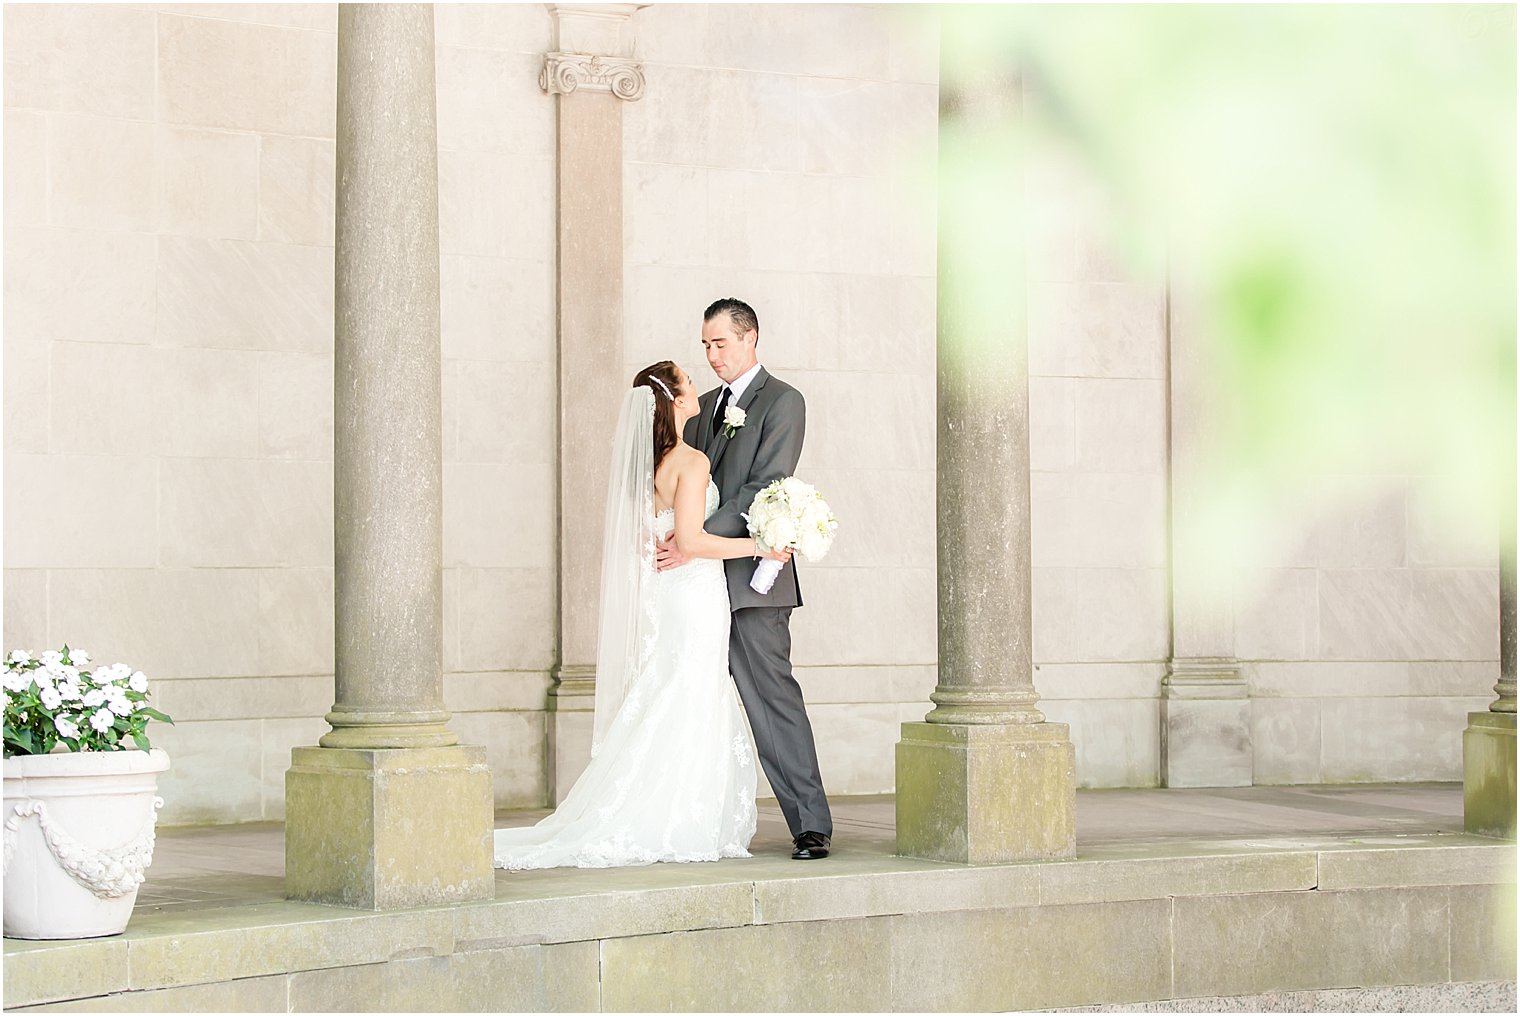 Wedding photo at Monmouth University | Idalia Photography